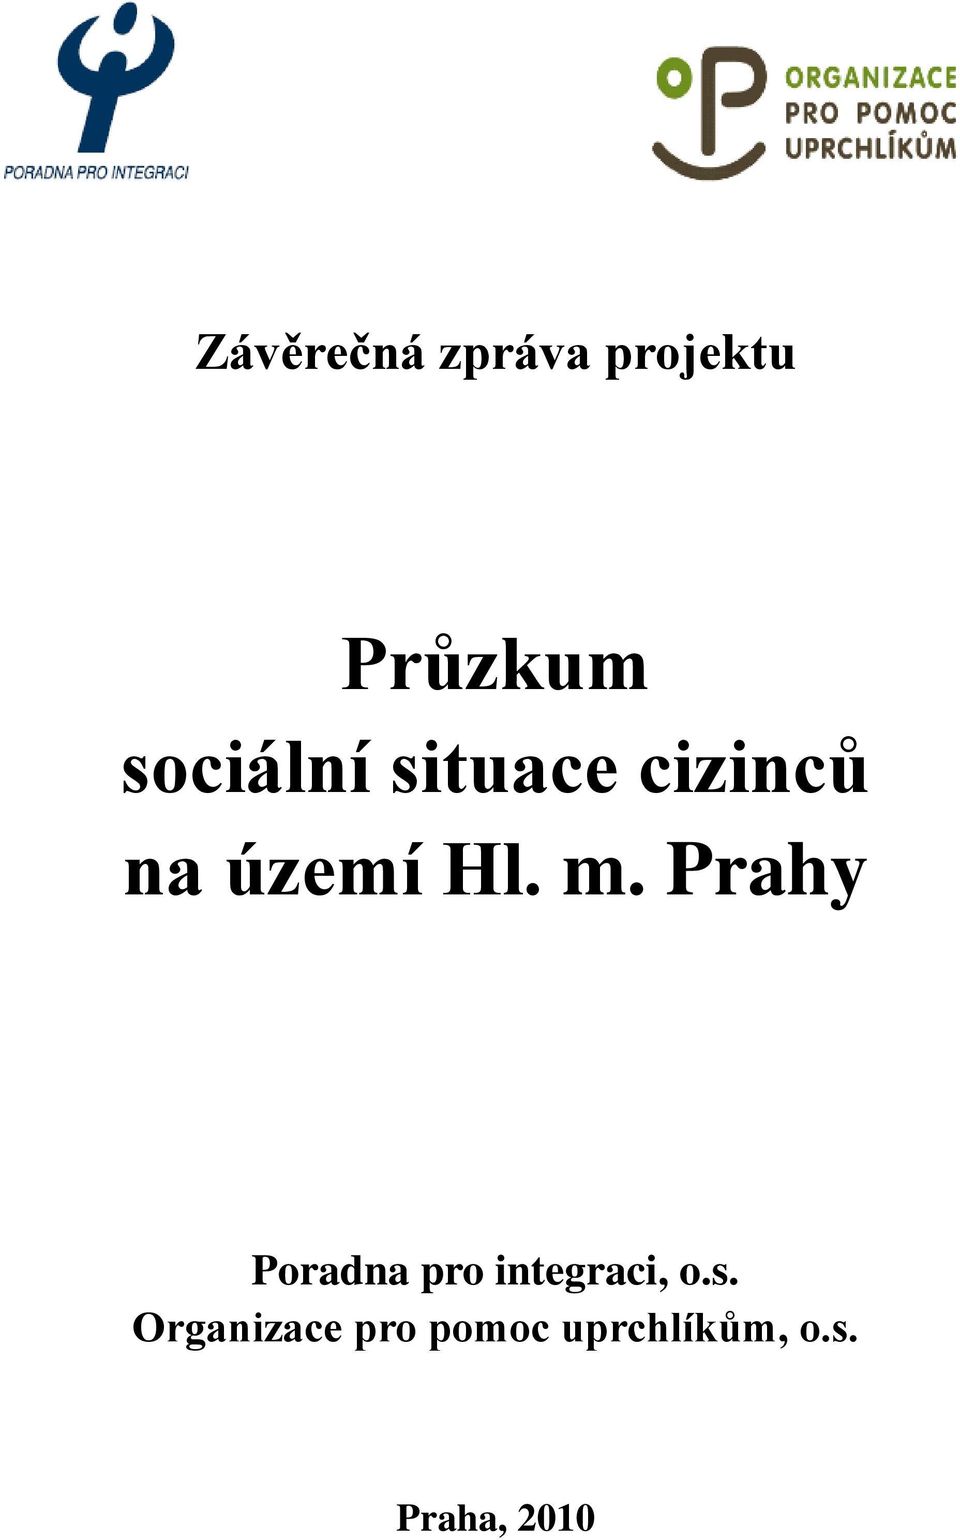 Prahy Poradna pro integraci, o.s.